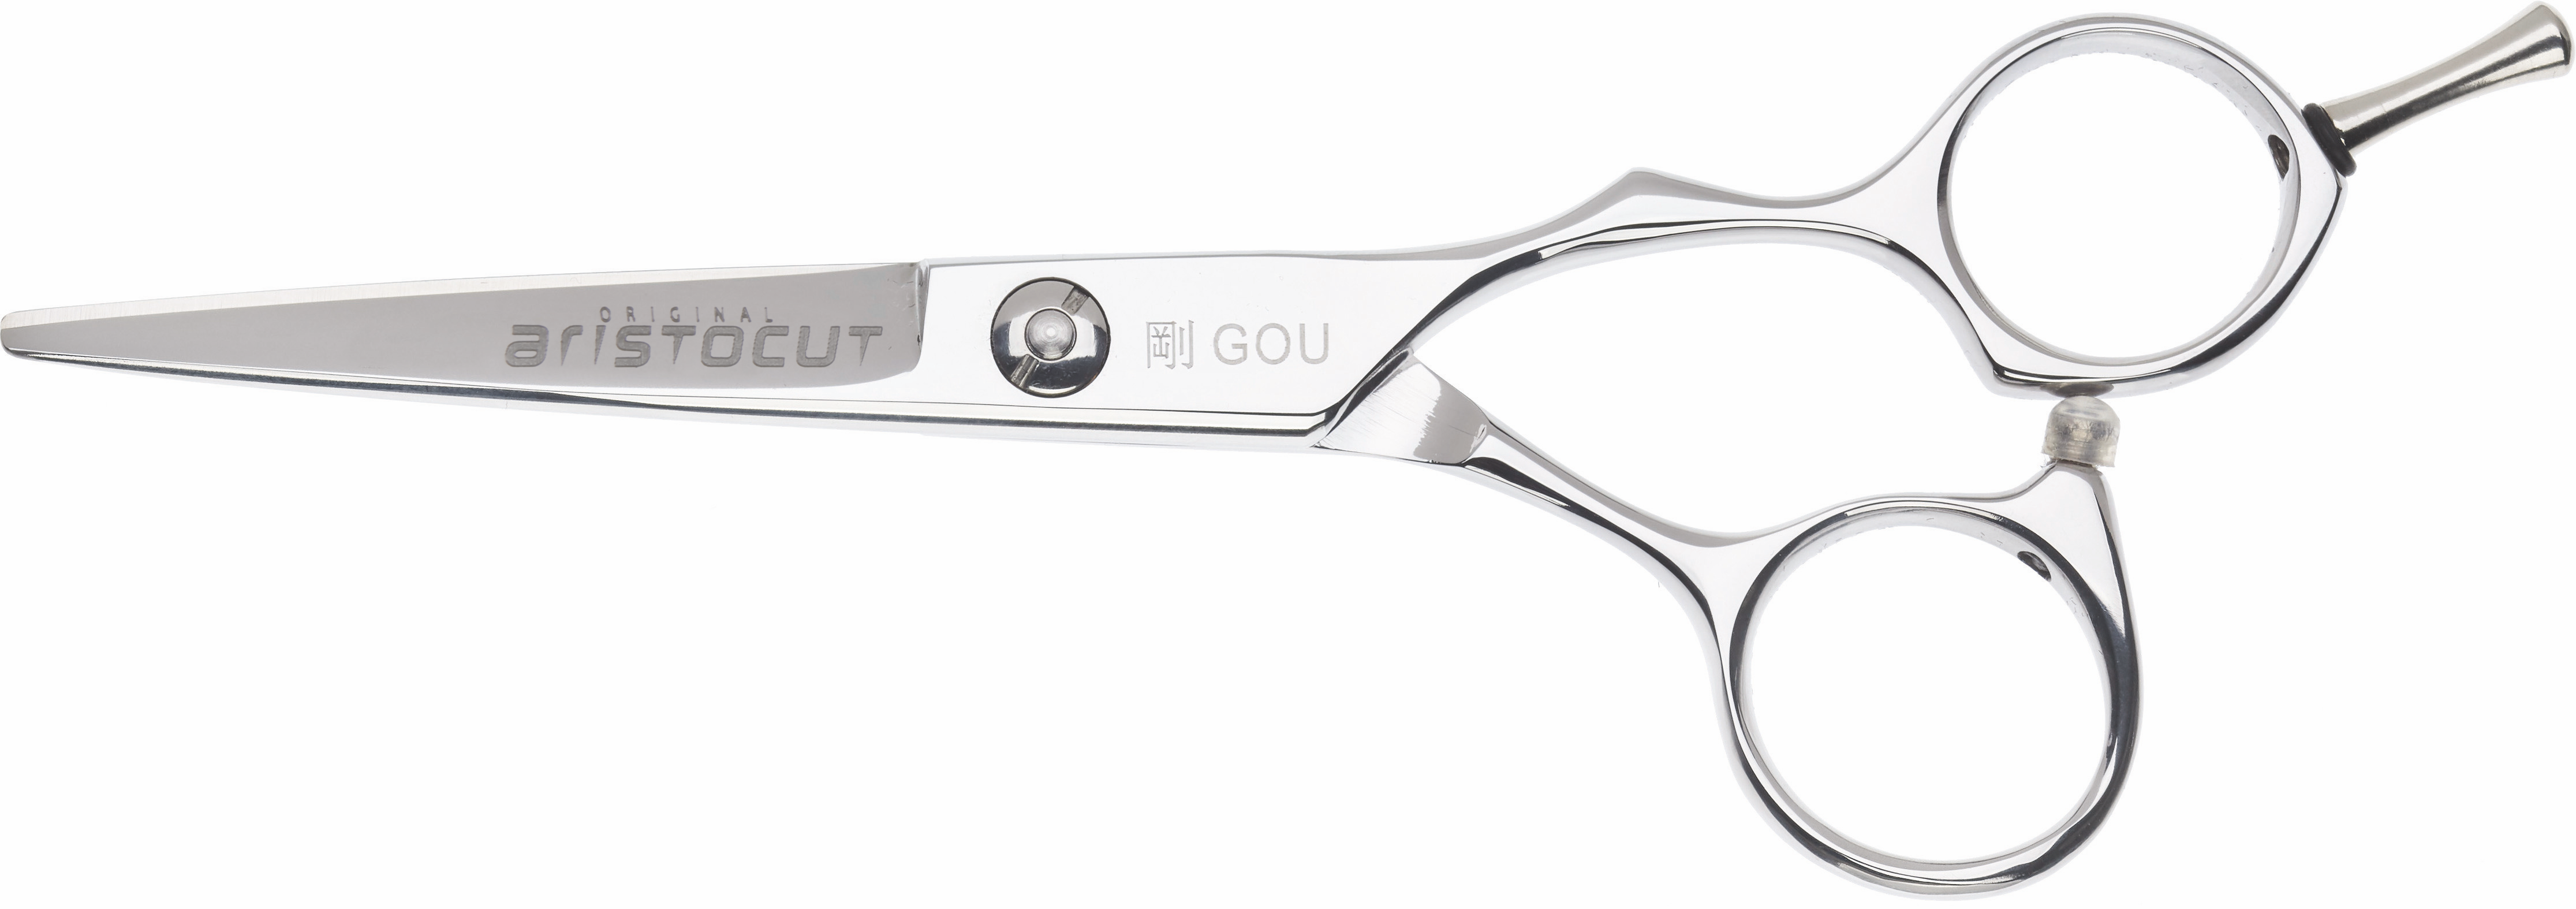 GOU Hair cutting scissors